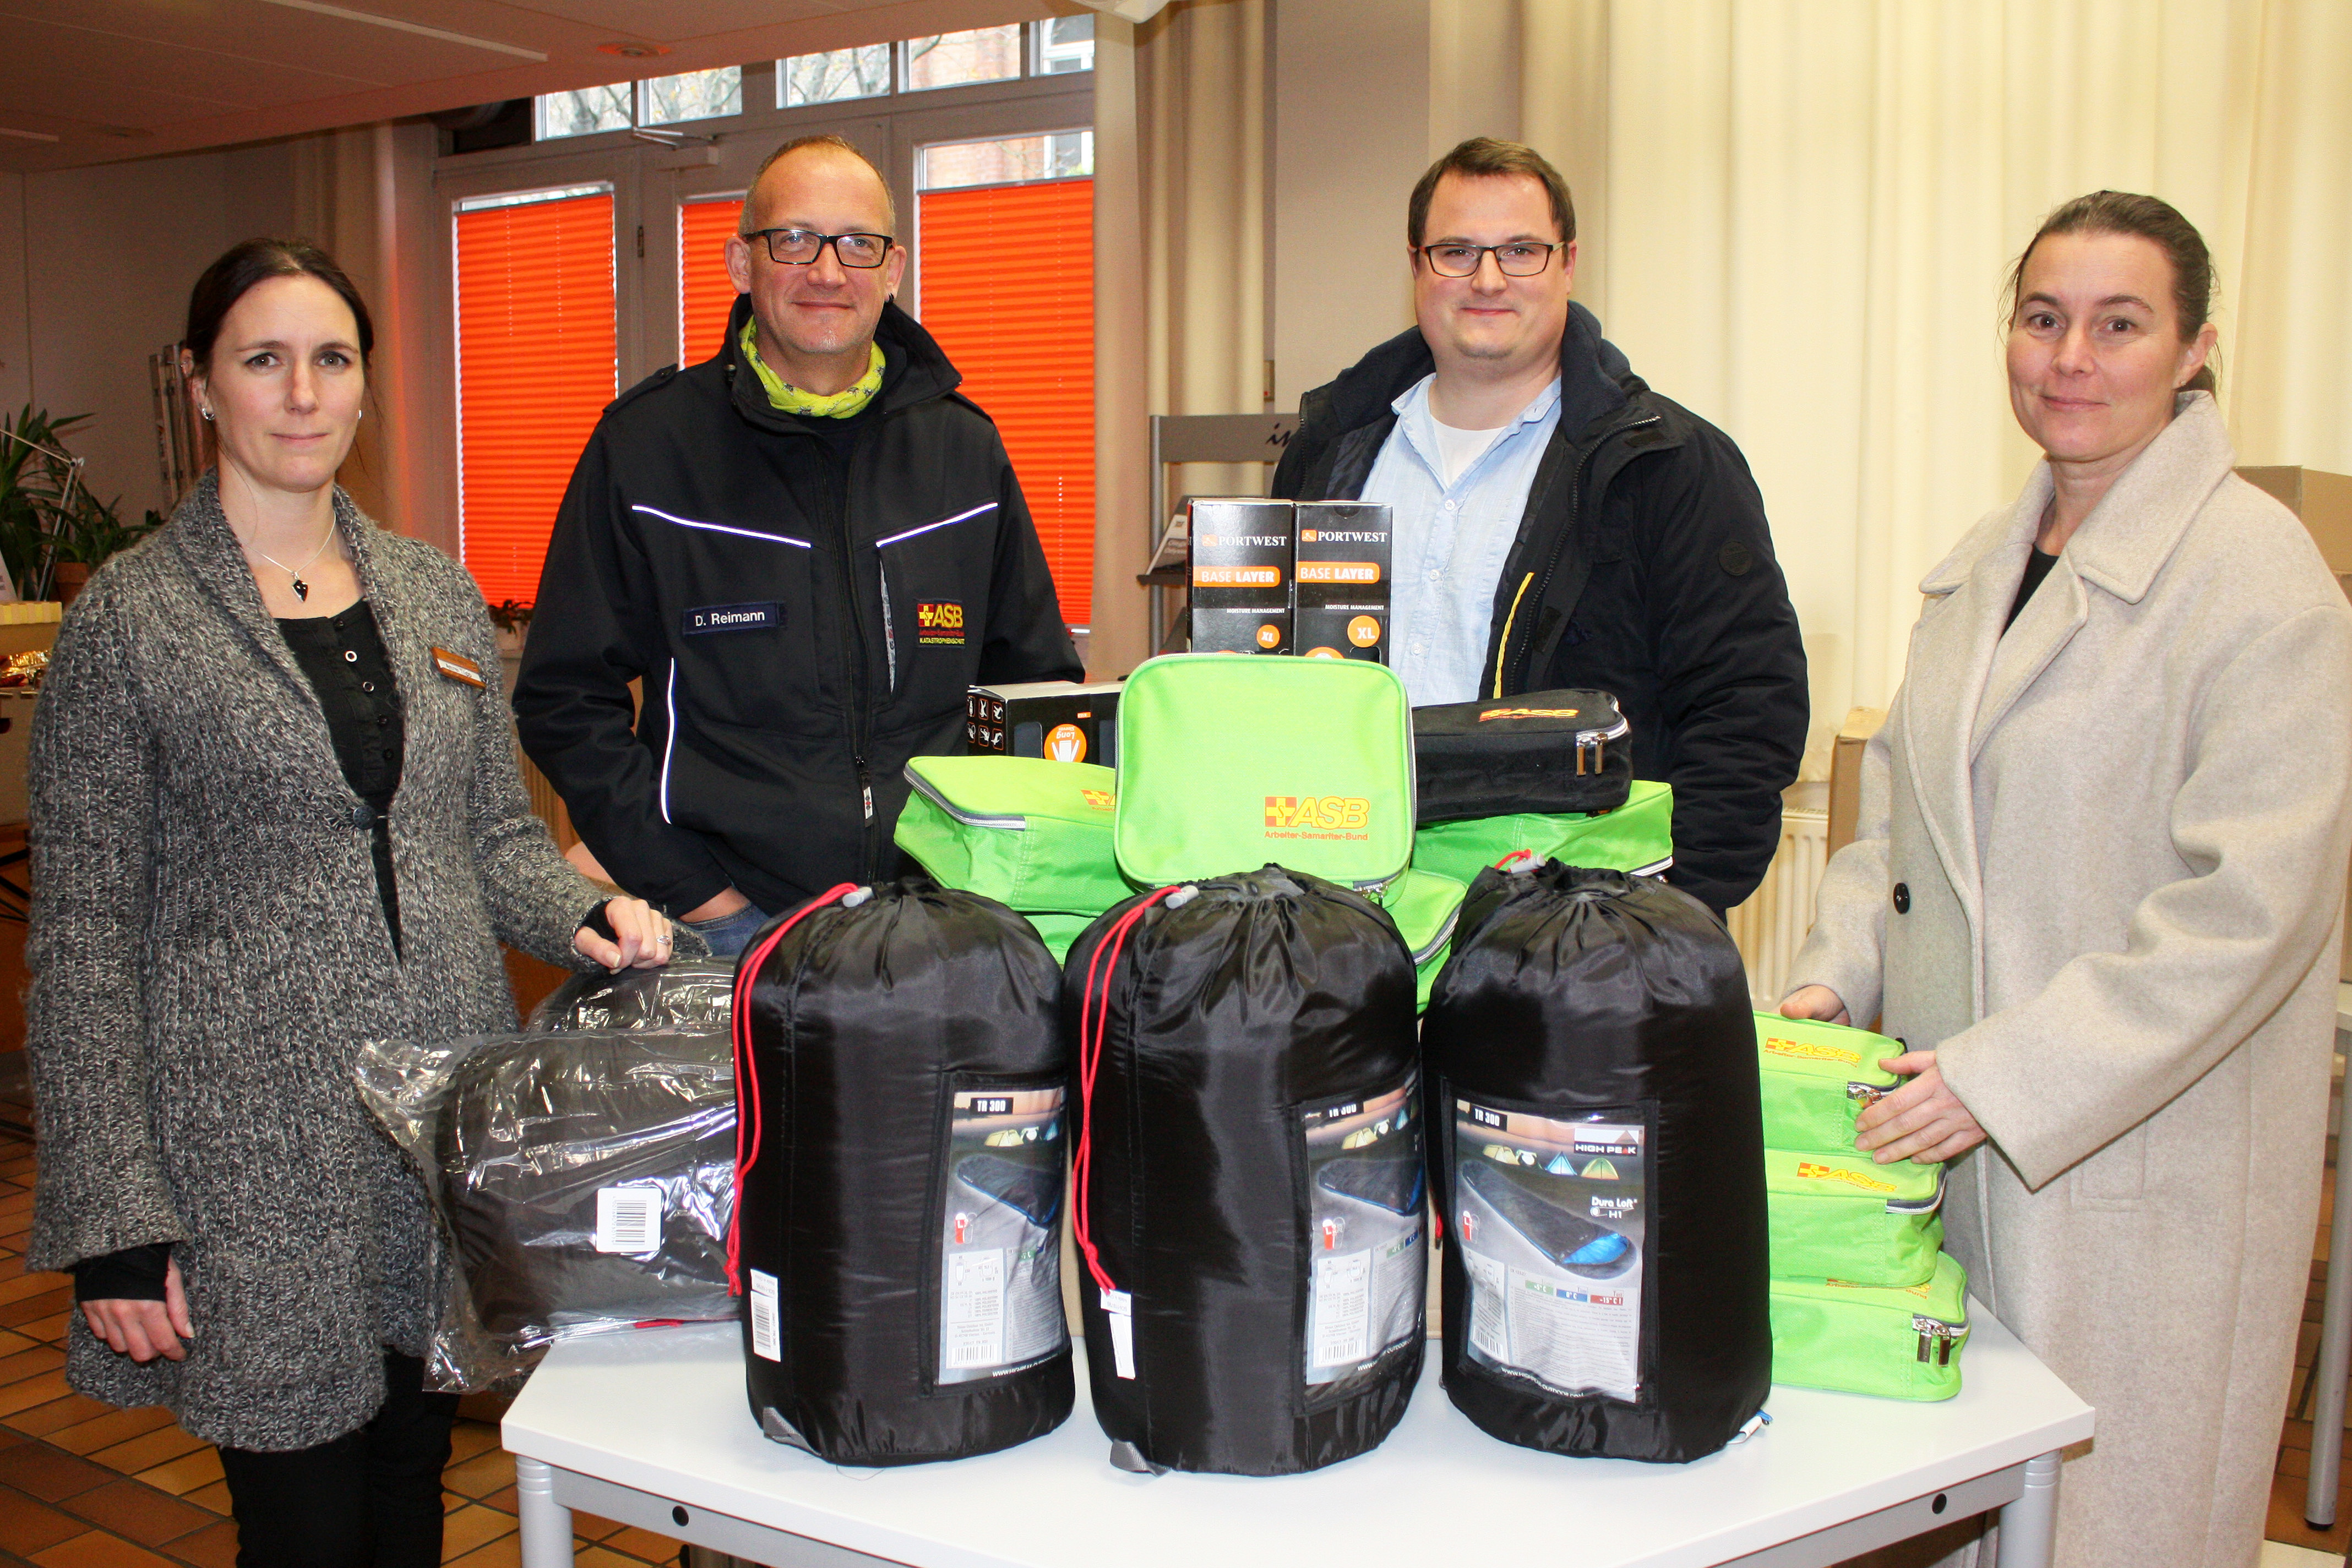 ASB hilft obdachlosen Menschen durch den Winter | Regionalverband Kassel-Nordhessen beteiligte sich an Kältehilfe-Aktion des ASB Deutschland